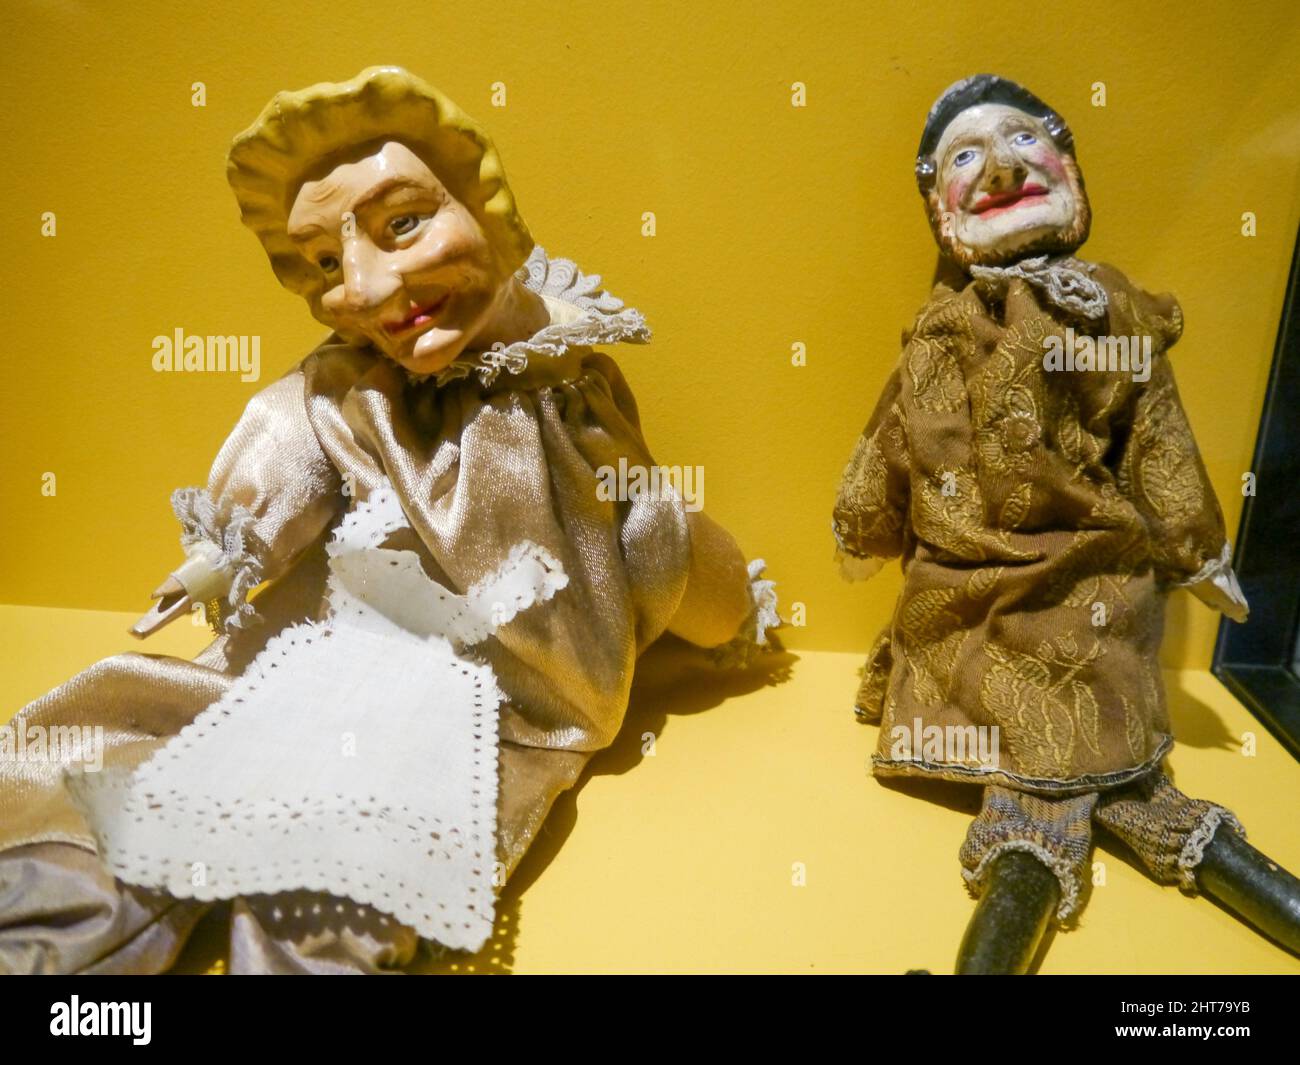 Victorian Punch y Judy títeres que datan de los años 1800. Punch y Judy eran un popular espectáculo de marionetas que a menudo se llevaba a cabo en los complejos costeros británicos. Foto de stock